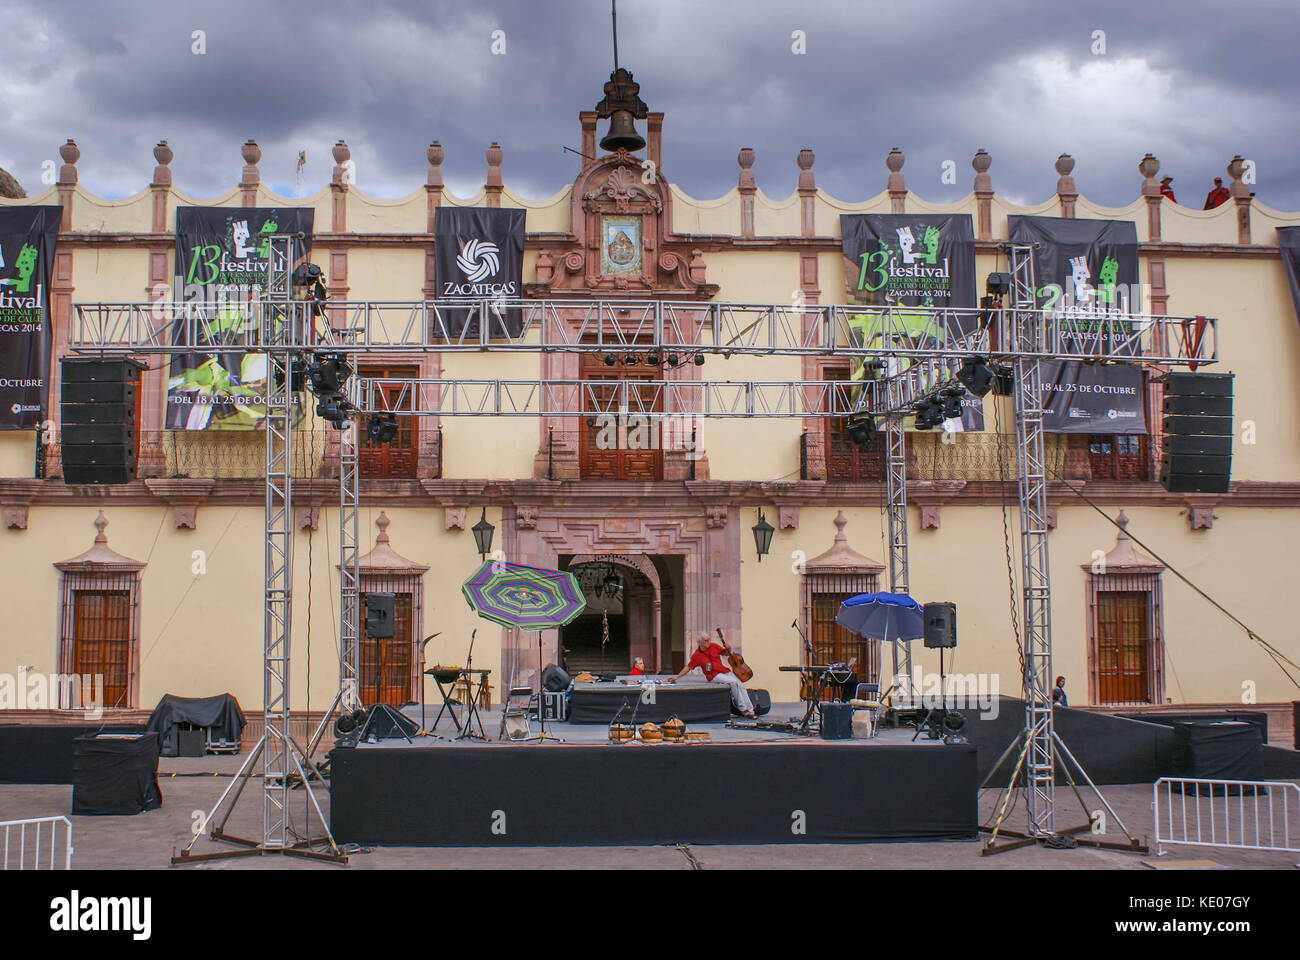 Zacatecas, Messico - 19 ottobre 2014: il palco è preparato per uno dei molti festival culturali nel bellissimo centro storico di Zacatecas, Messico Foto Stock